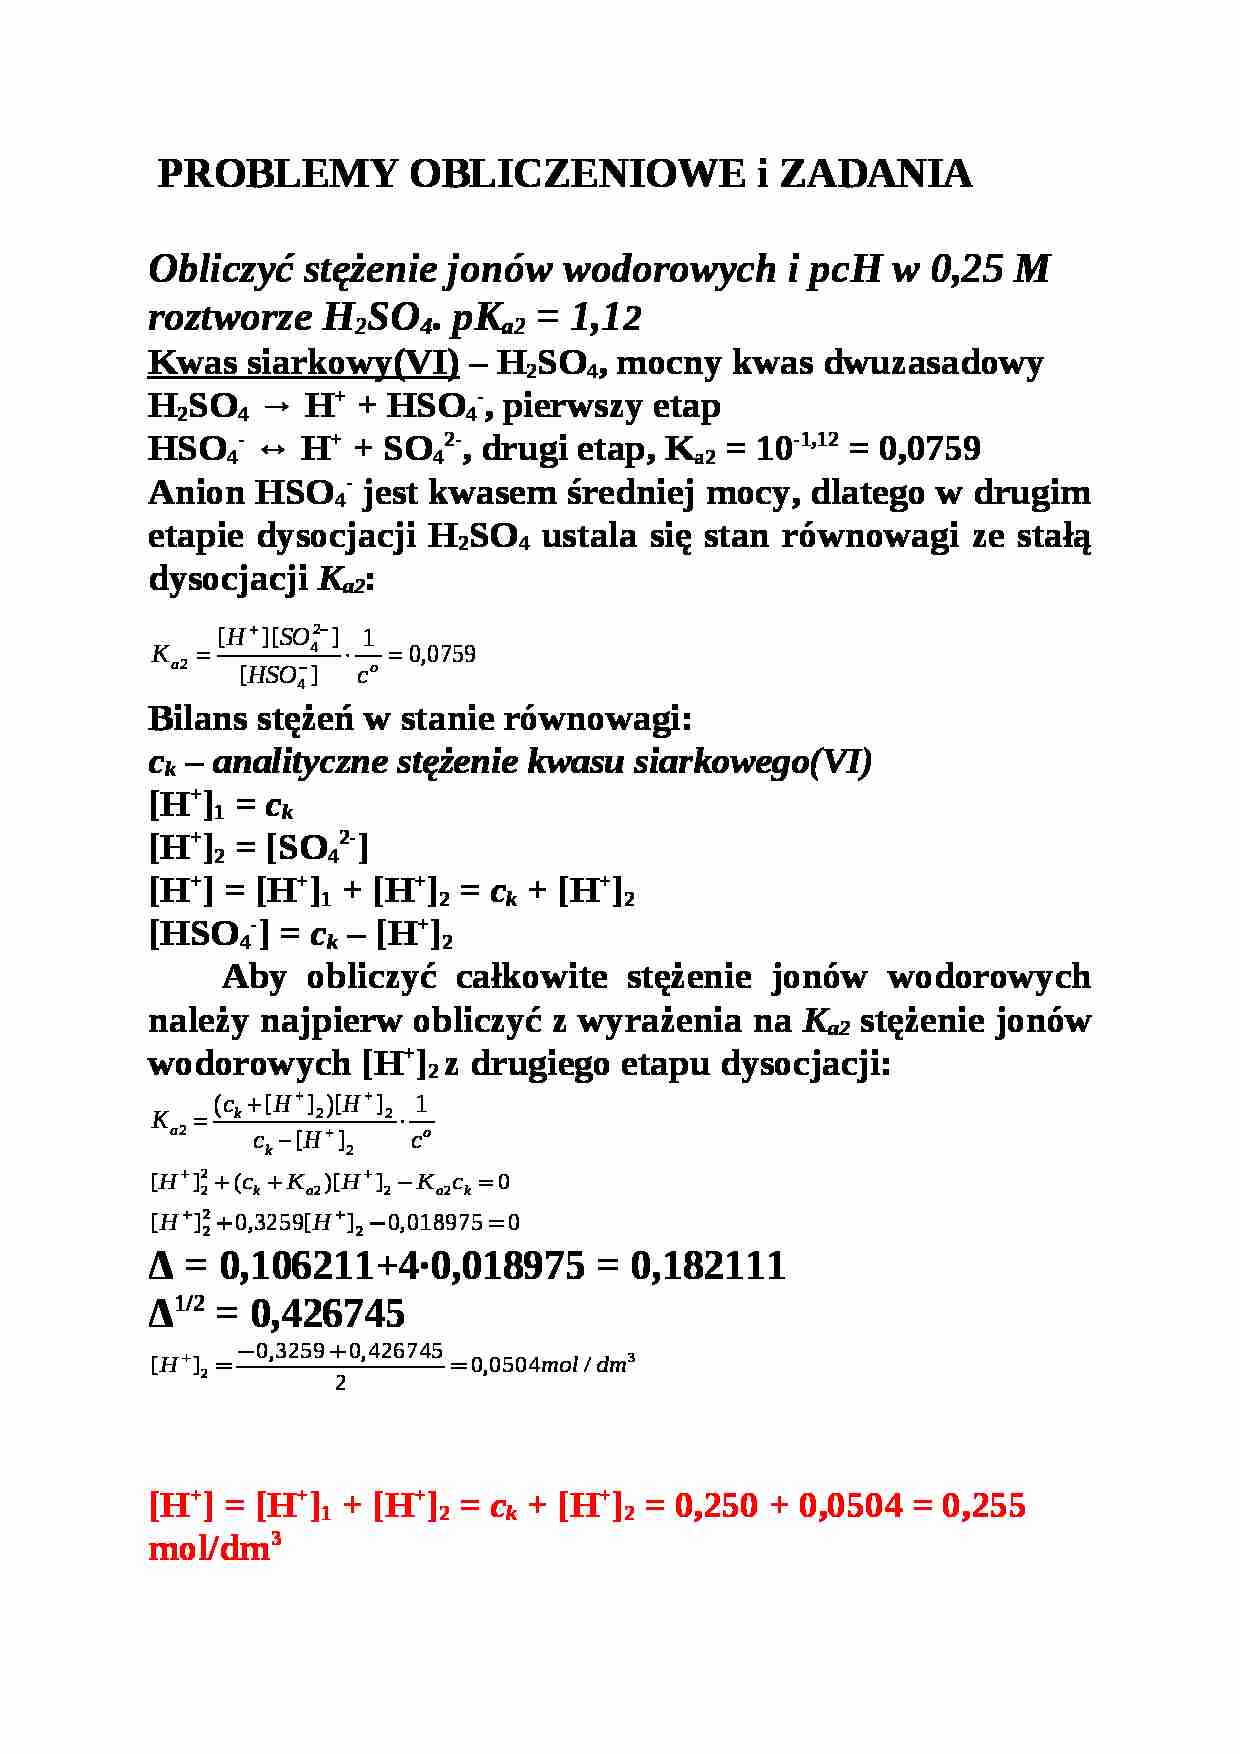 Chemia nieorganiczna - komplet materiałów - strona 1